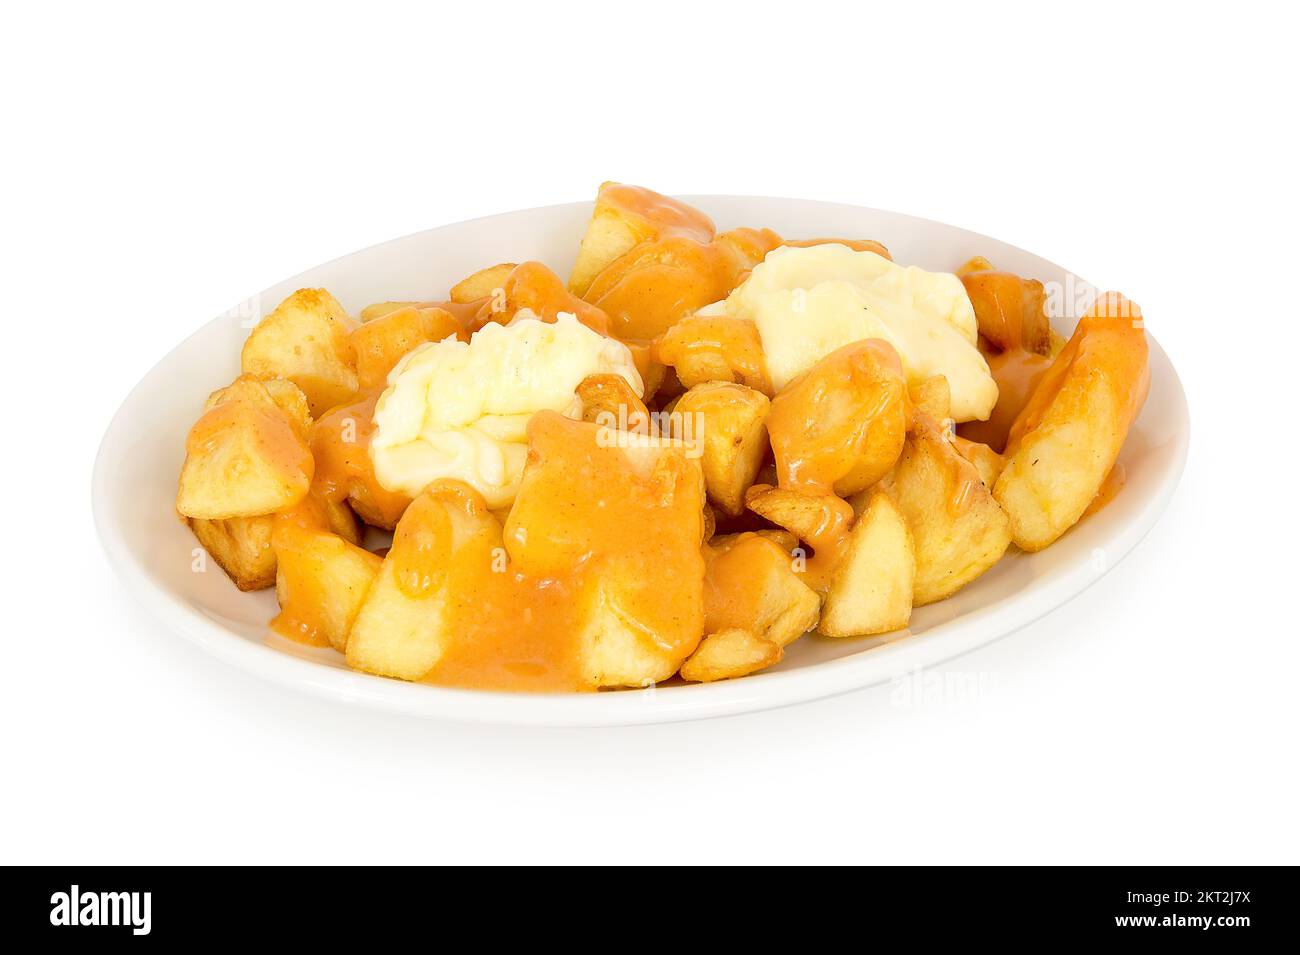 Patatas con alioli – Cocina con BRA